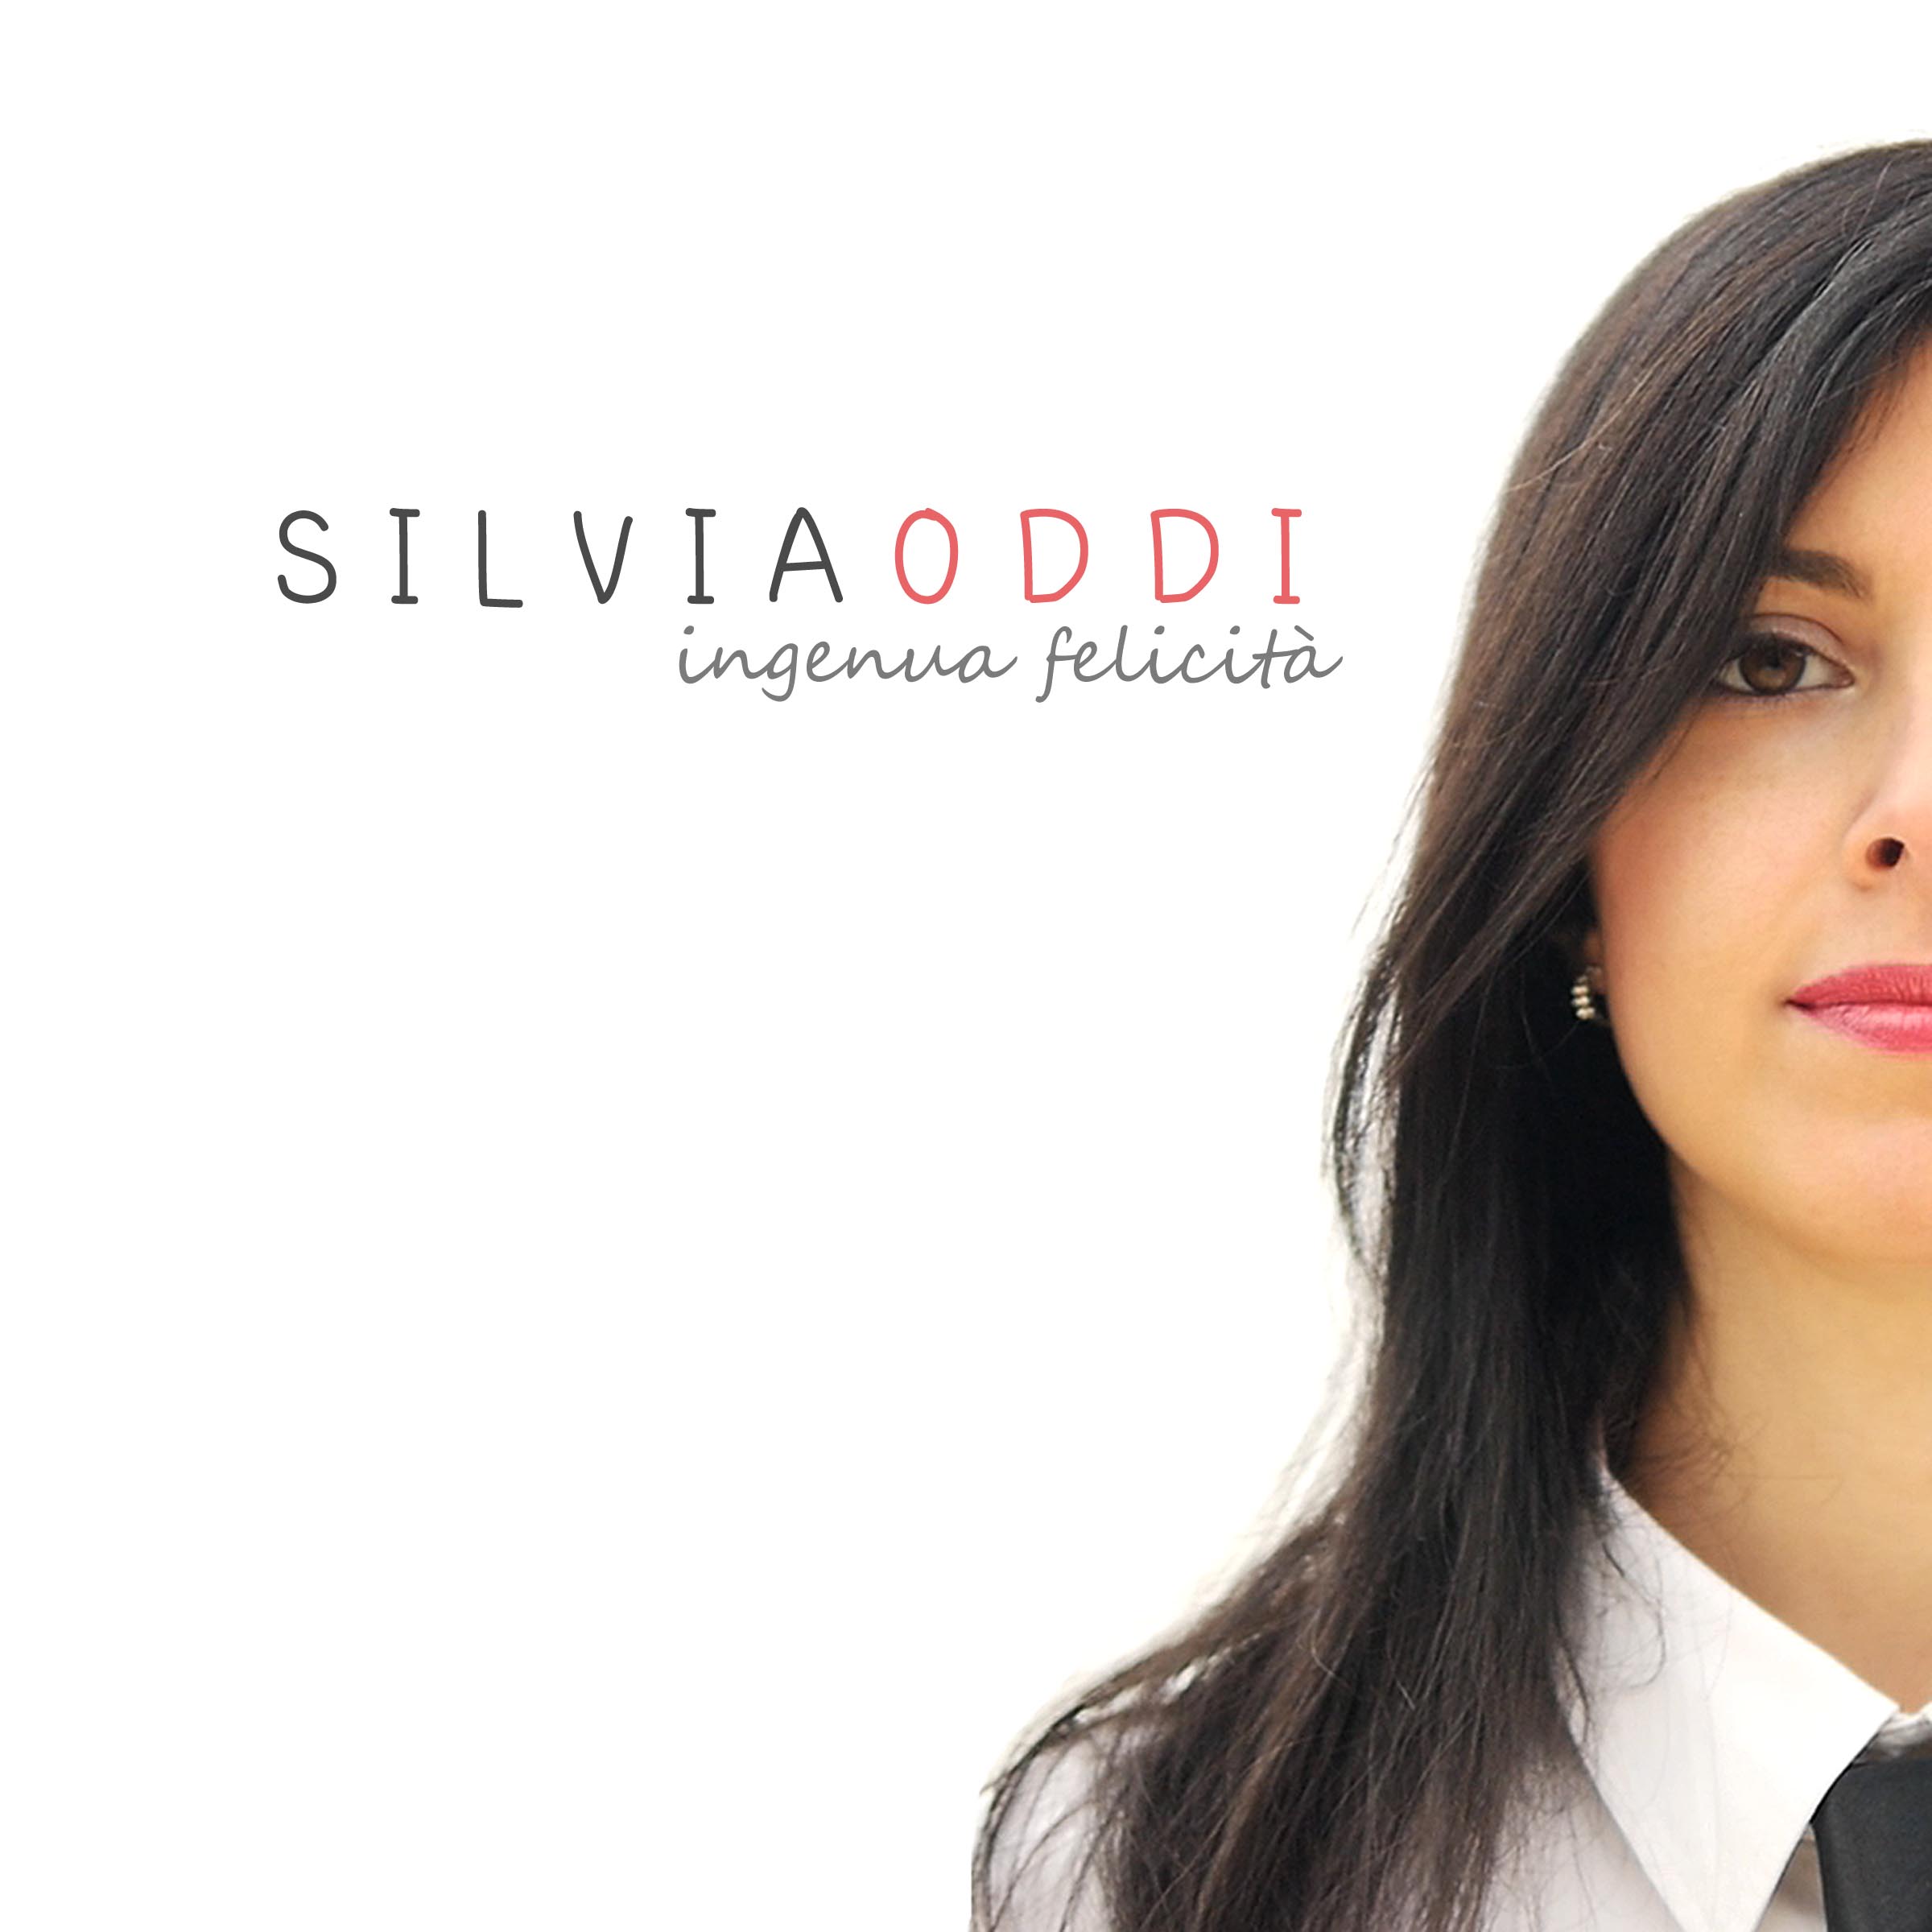 Disponibile in digital download “Ingenua Felicità“, il disco d’esordio di Silvia Oddi